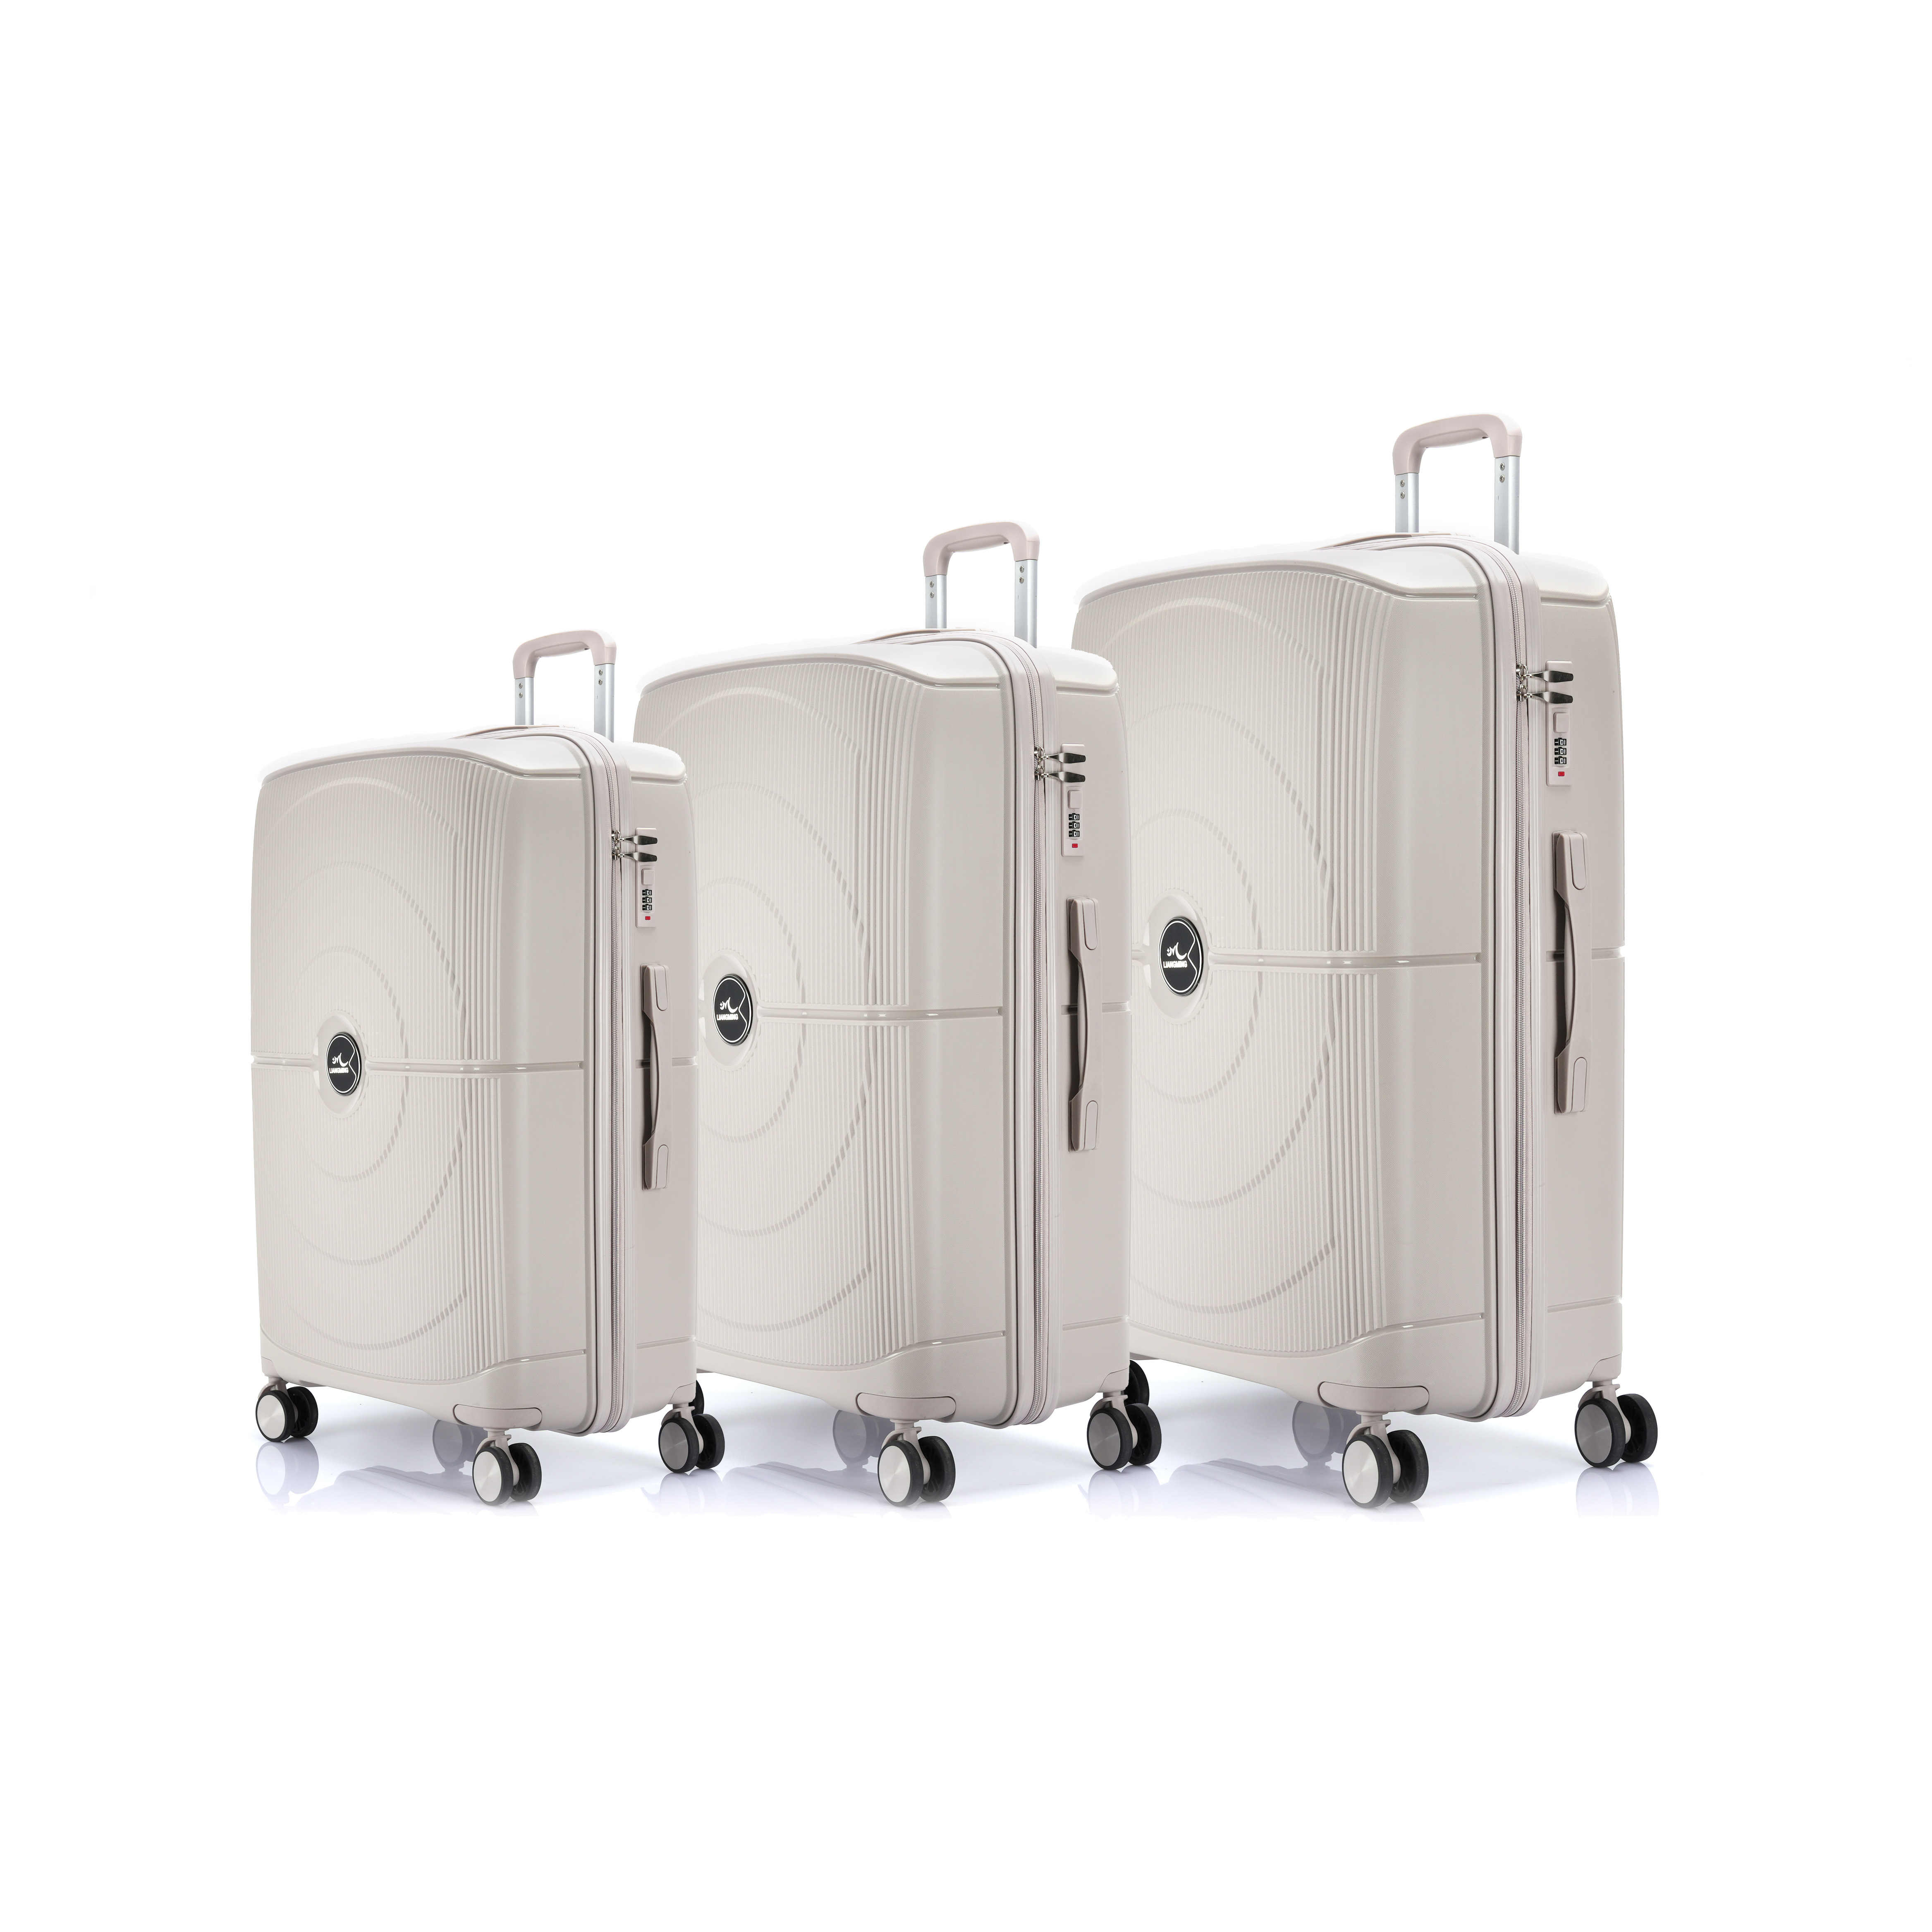 کدام اندازه چمدان برای شما بهترین است؟